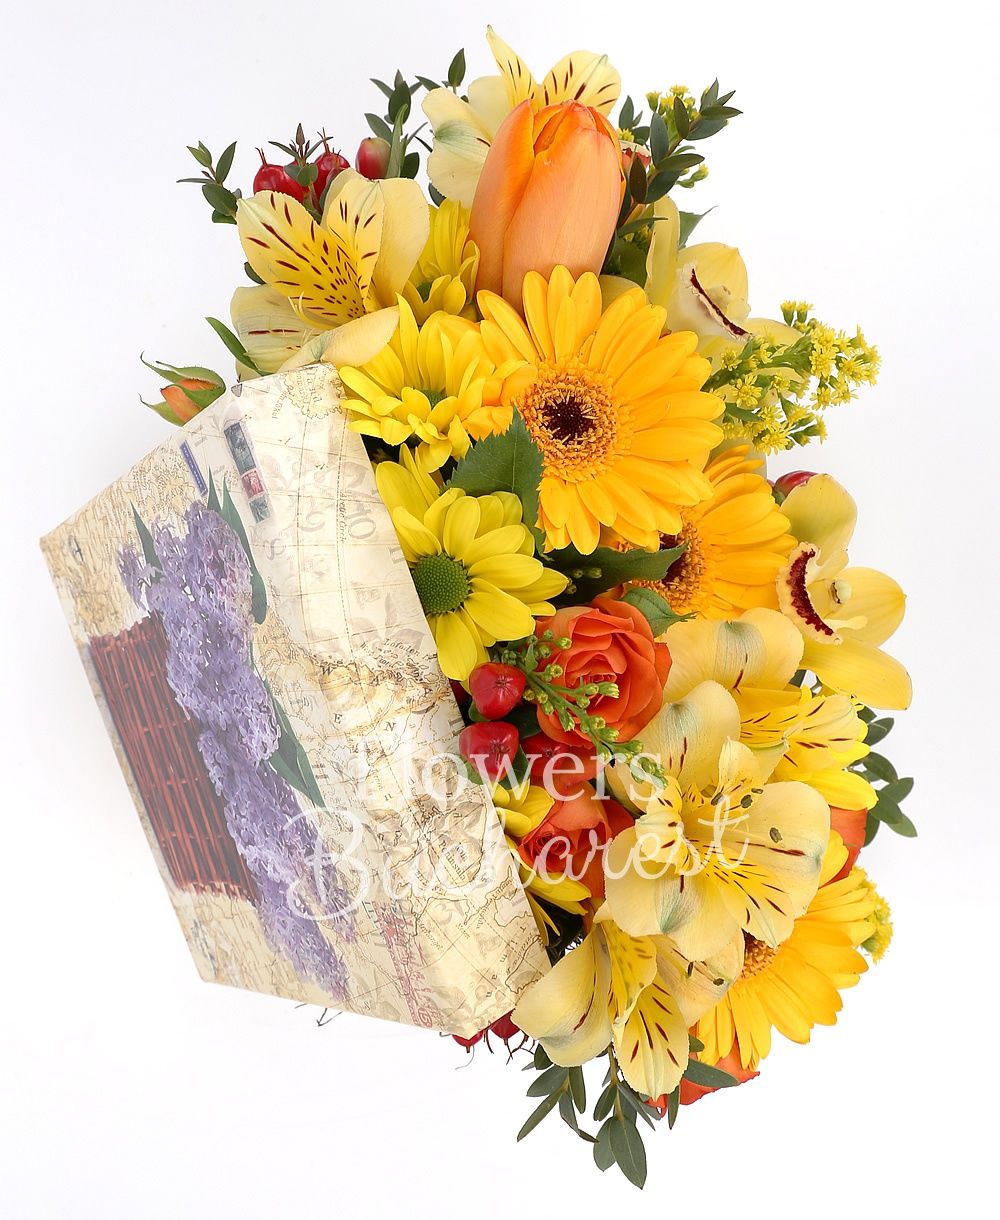 3 yellow gerbera, 1 orange minirose, red hypericum, yellow alstroemeria, yellow solidago, yellow chrysanthemum, greenery